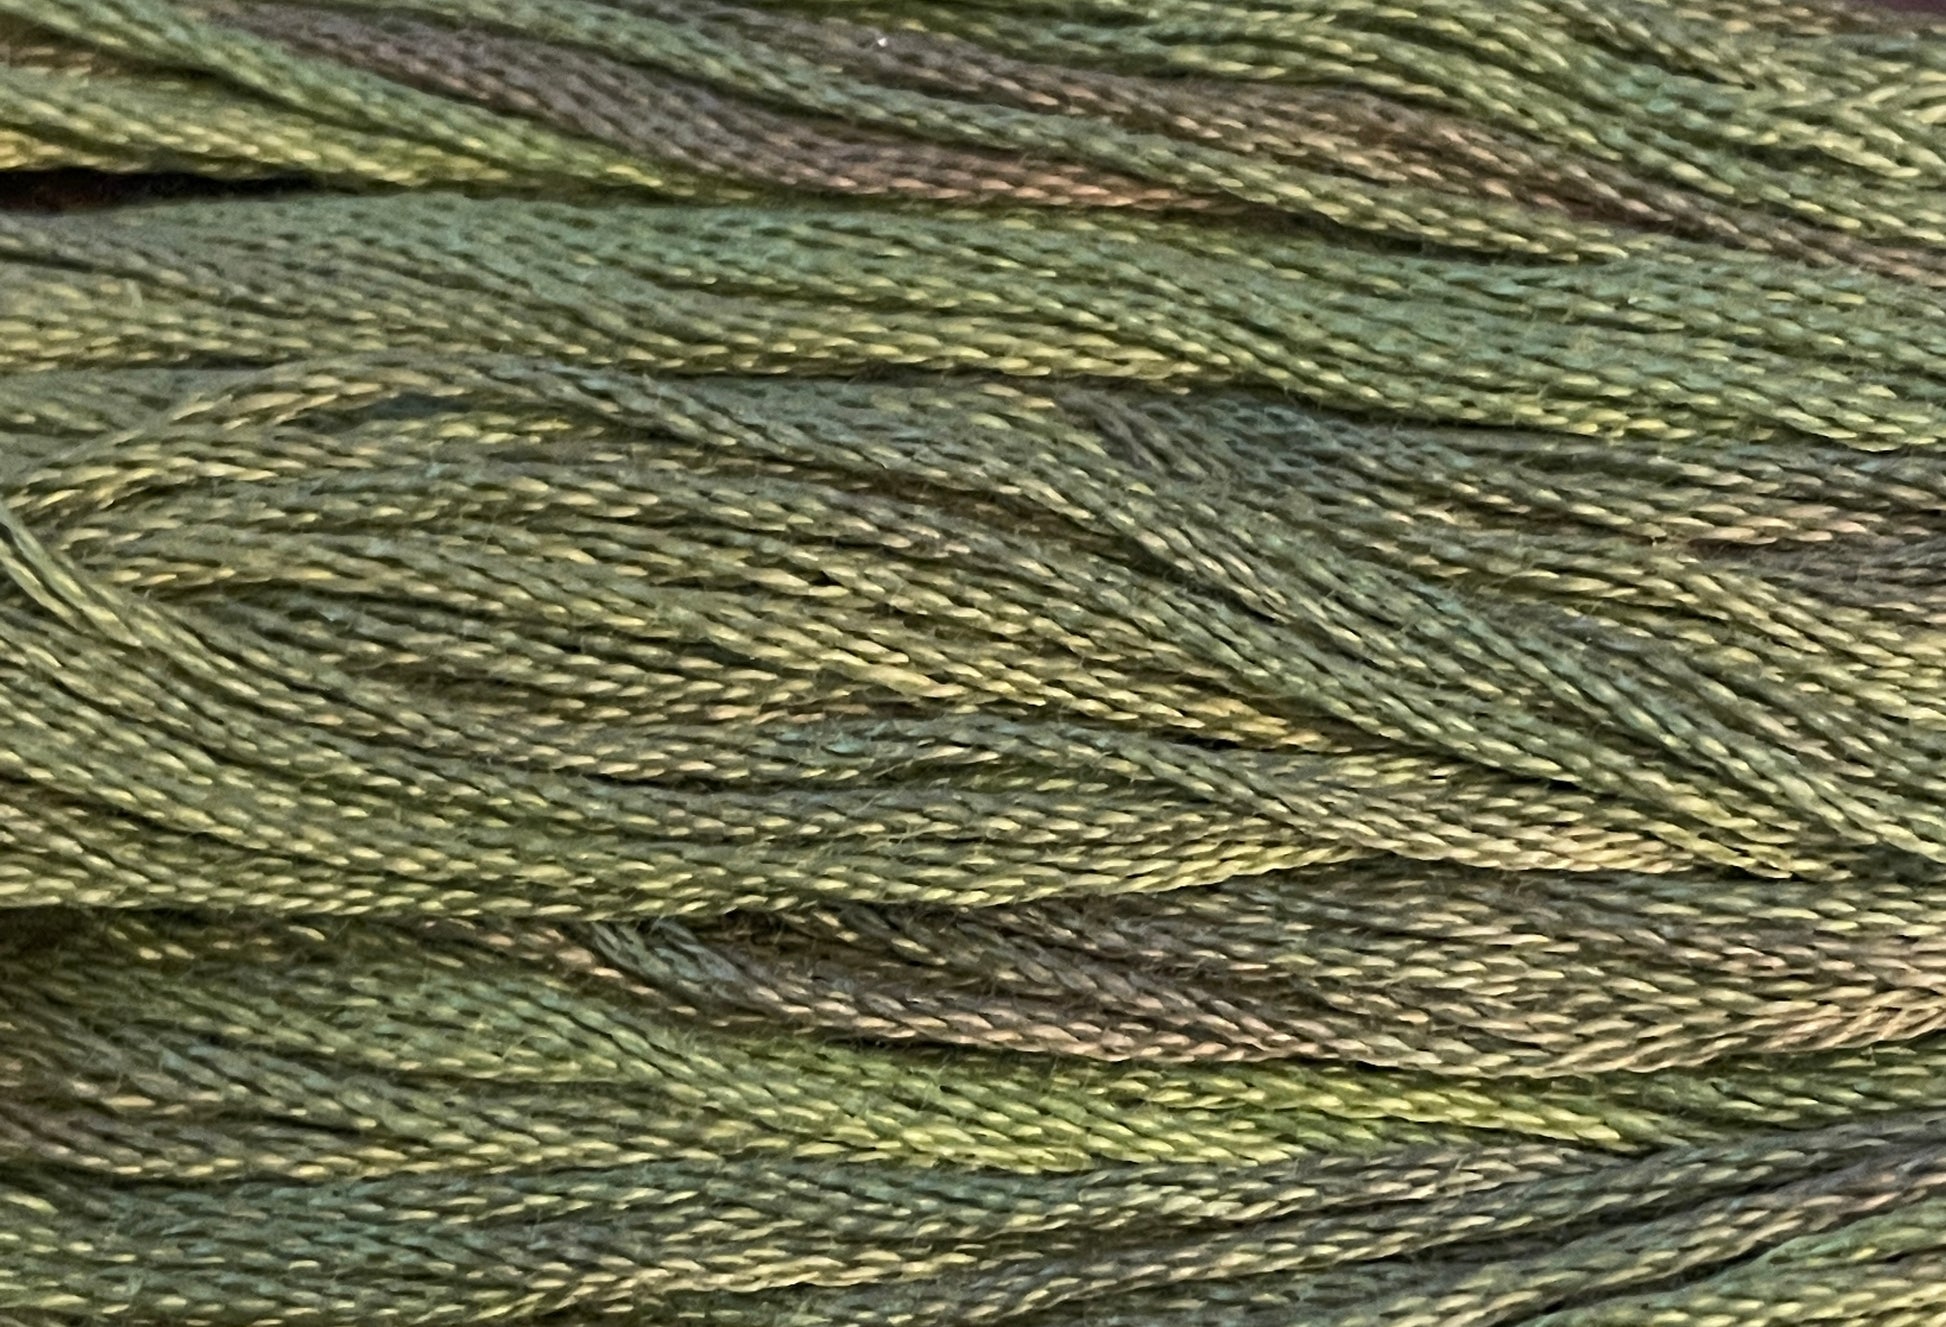 Chives - Gentle Arts Cotton Thread - 5 yard Skein - Cross Stitch Floss, Thread & Floss, Thread & Floss, The Crafty Grimalkin - A Cross Stitch Store